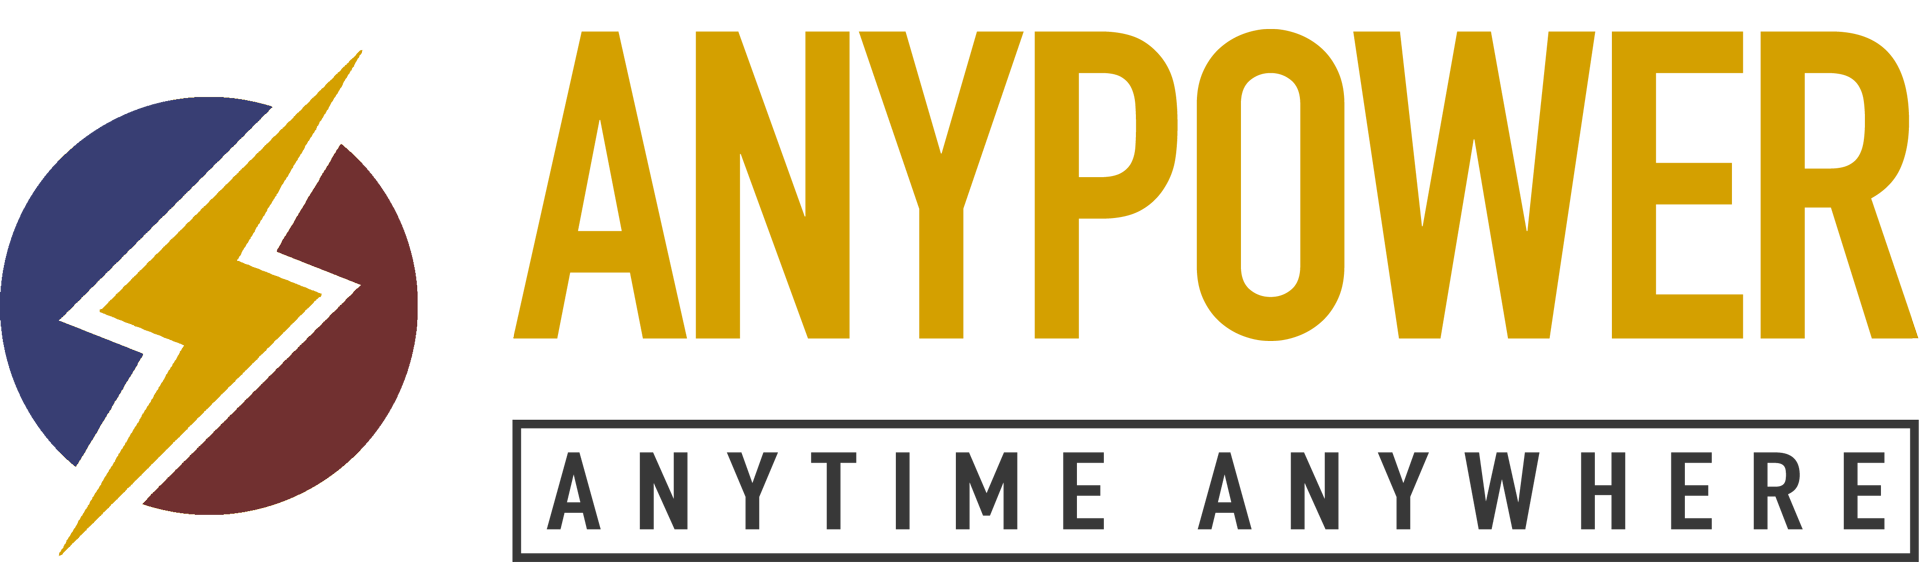 AnyPower. Matthew Davis - logo